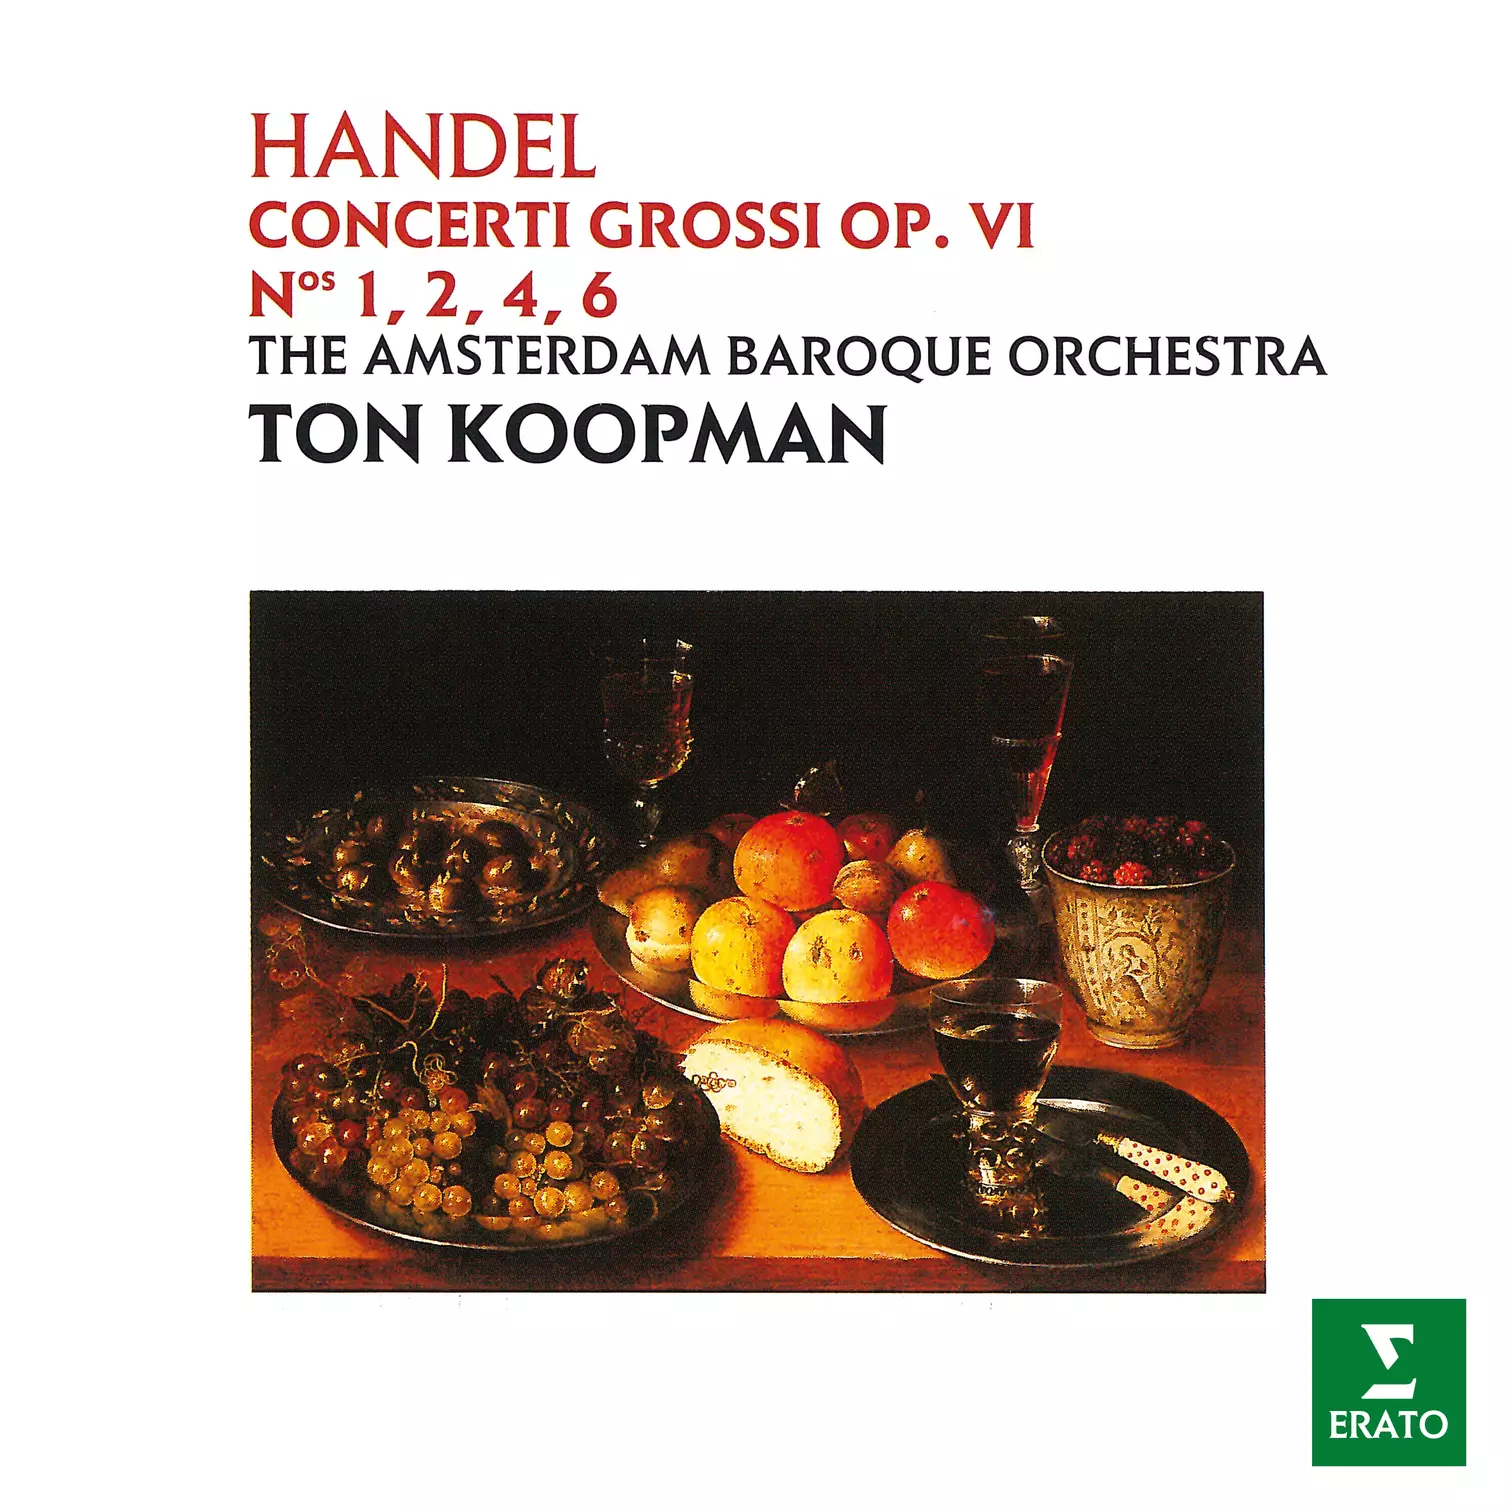 Handel: Concerti grossi, Op. 6